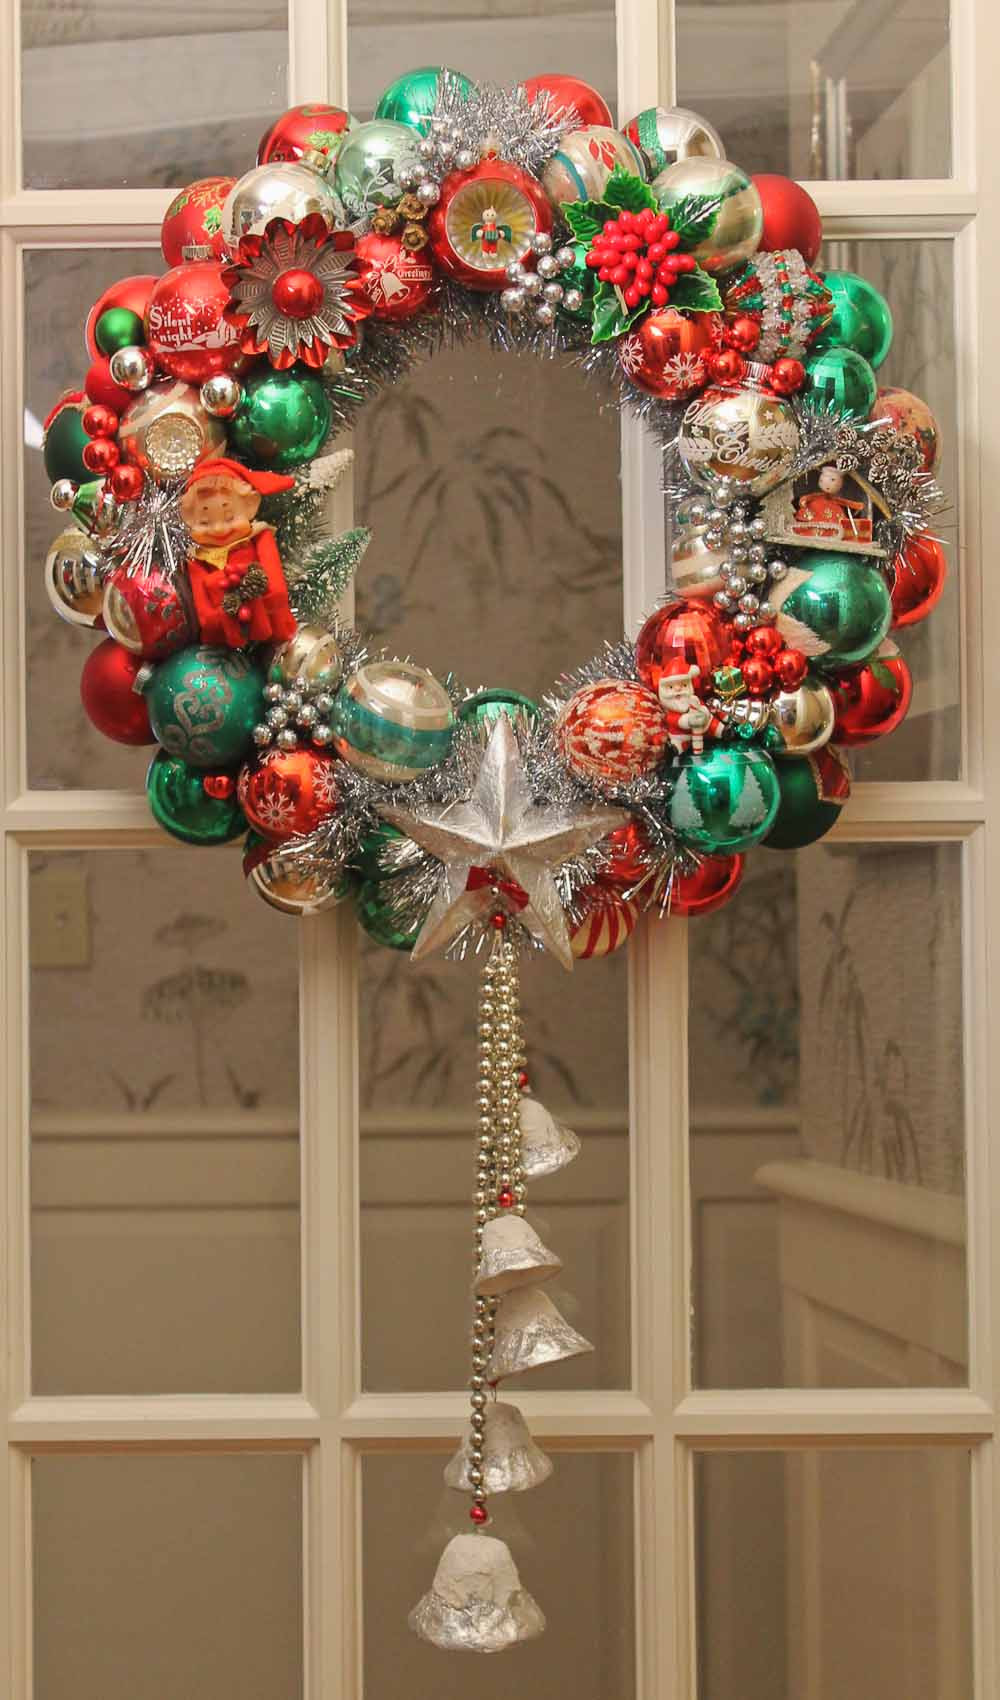 DIY Christmas Ornament Wreath
 100 photos of DIY Christmas ornament wreaths Upload